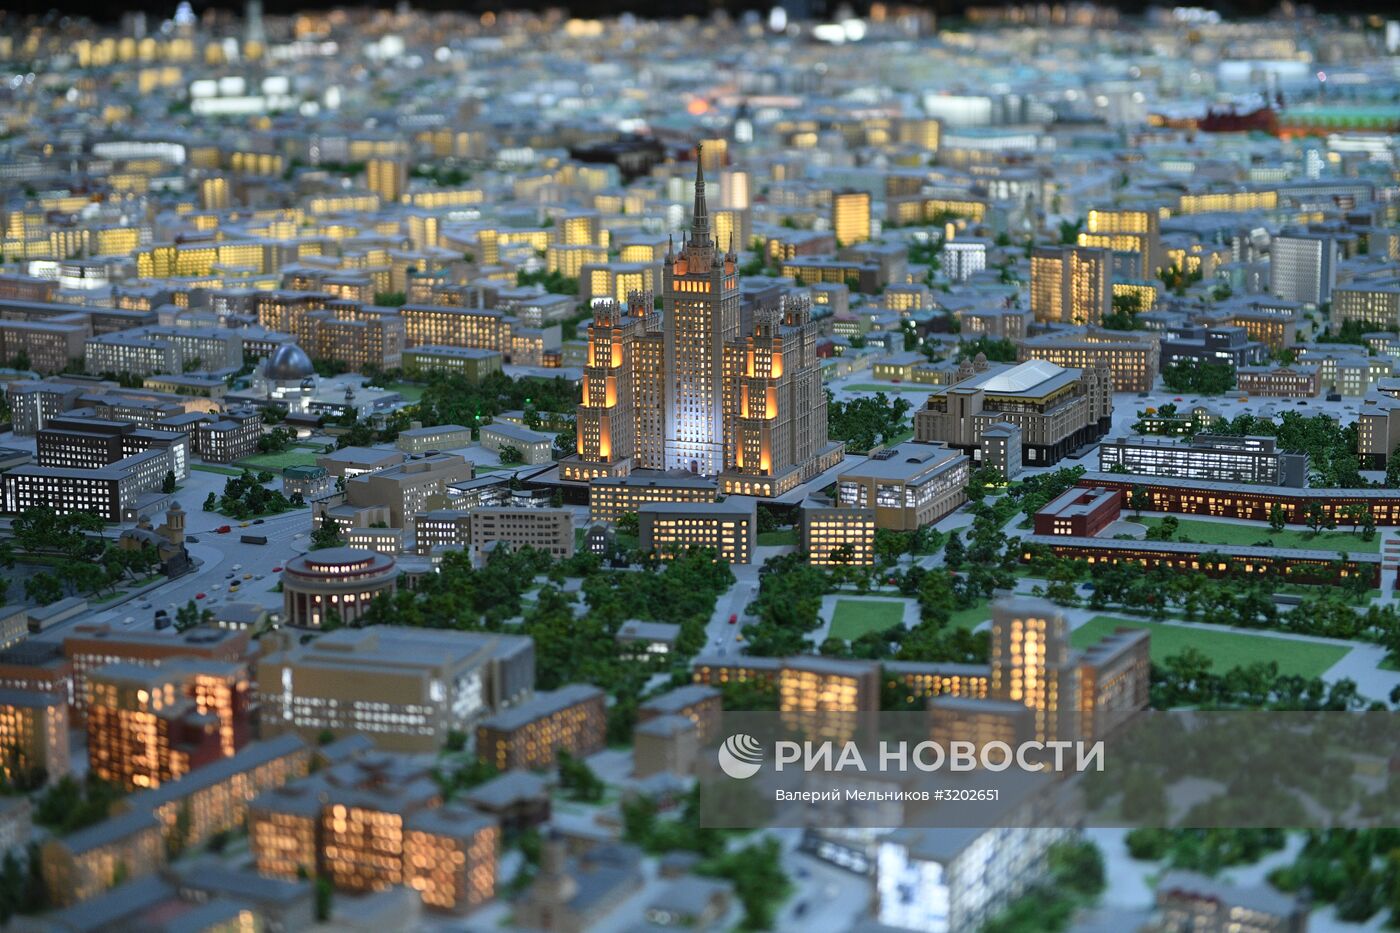 Макет Москвы представлен на ВДНХ